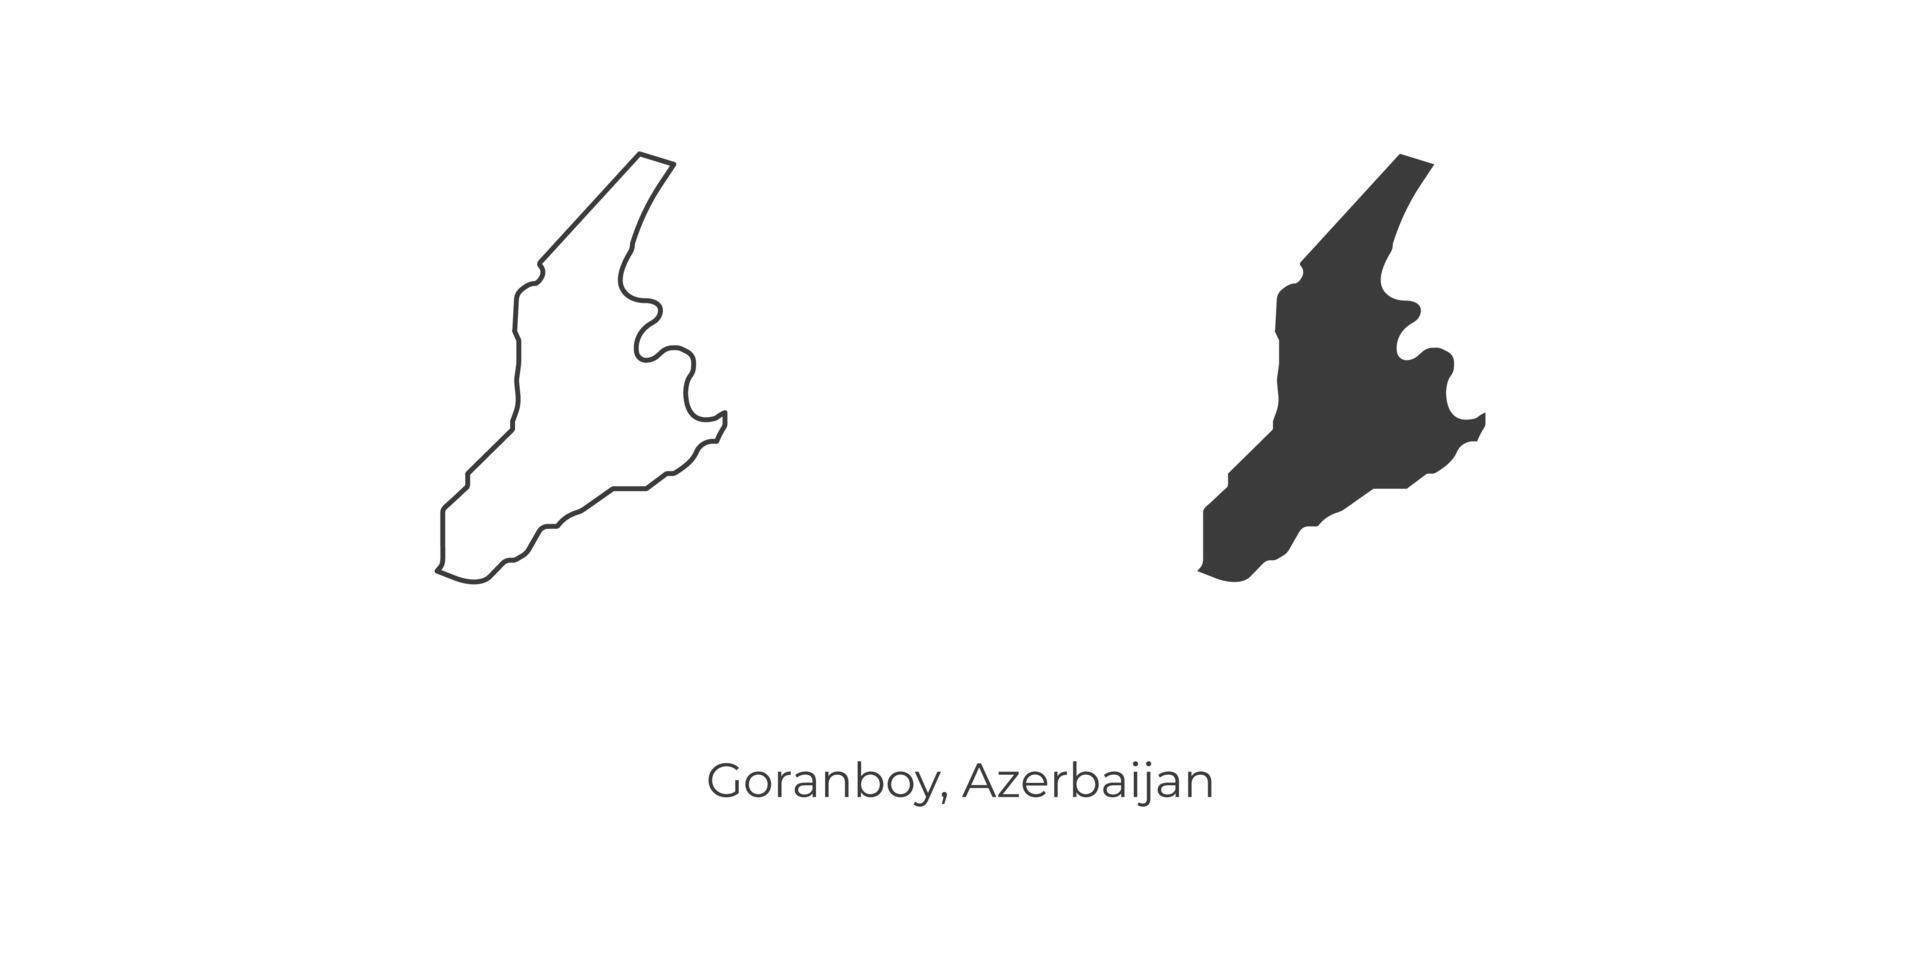 einfache Vektorillustration der Goranboy-Karte, Aserbaidschan. vektor